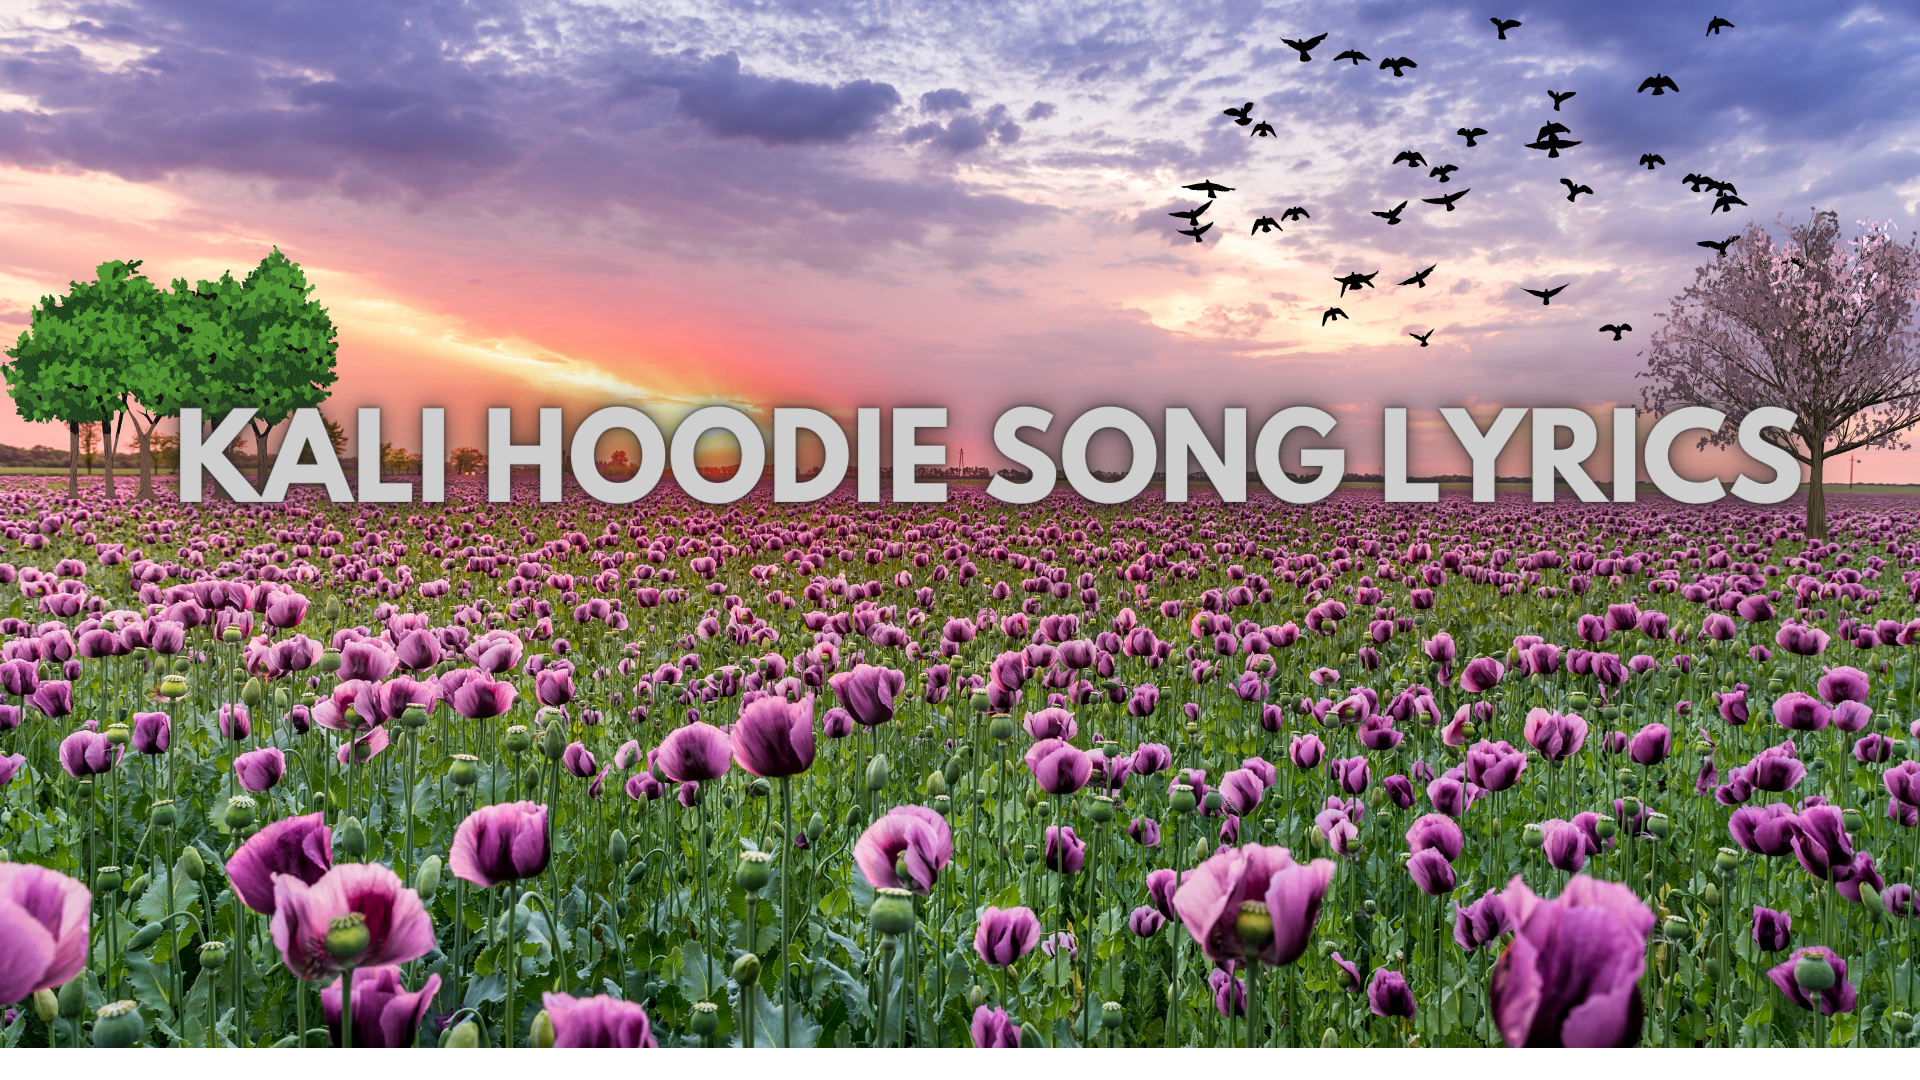 Kali Hoodie Song Lyrics